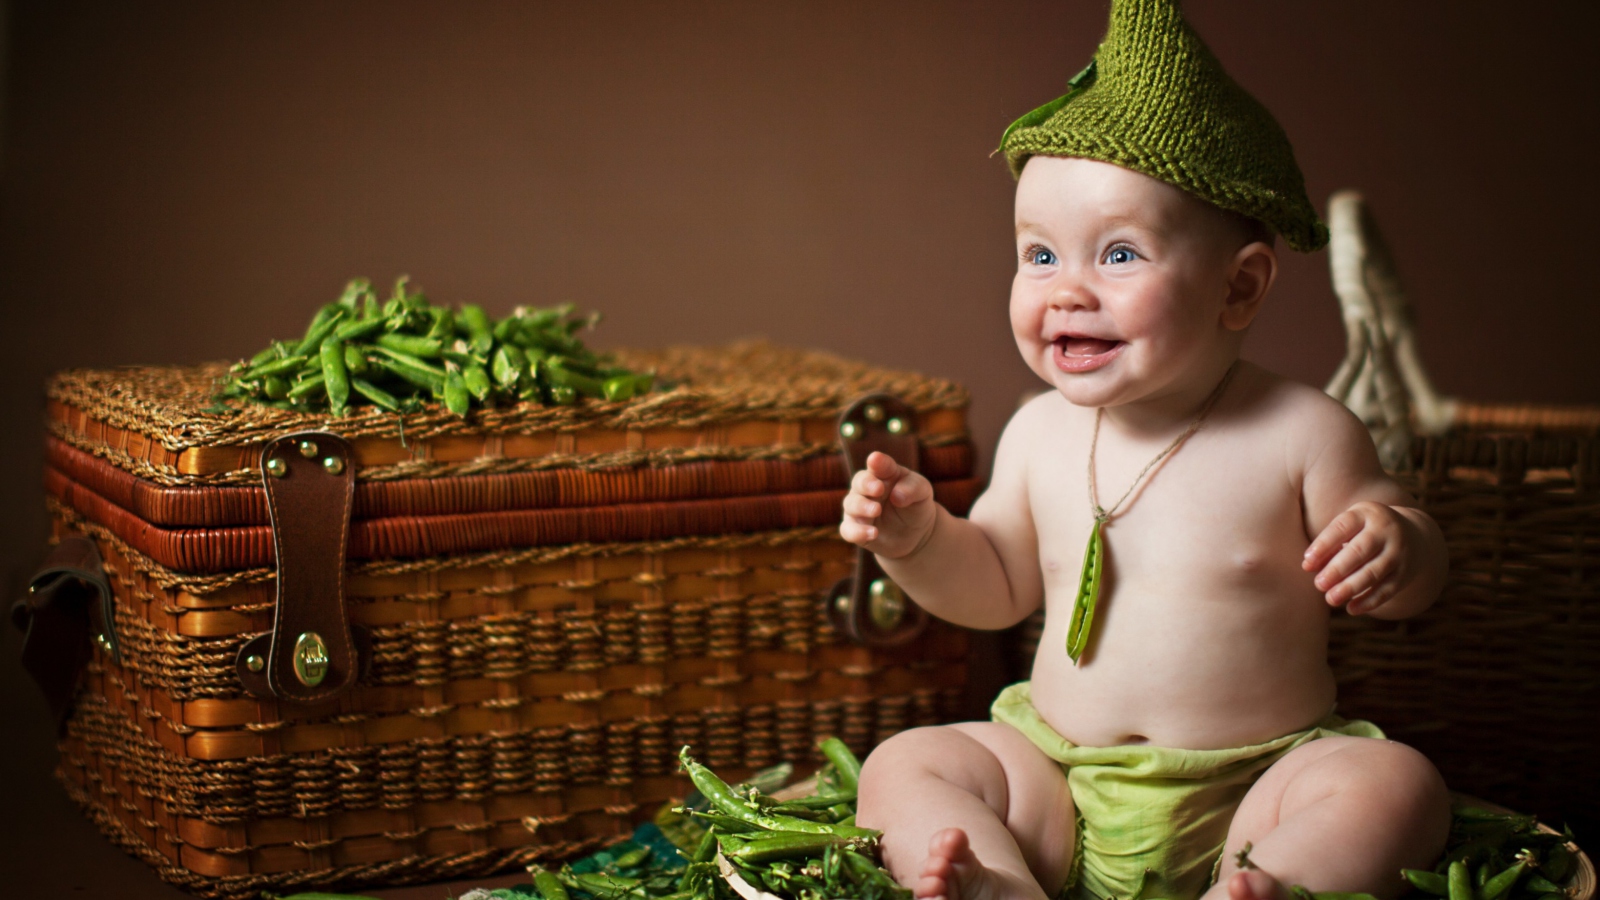 Обои Happy Baby Green Peas 1600x900